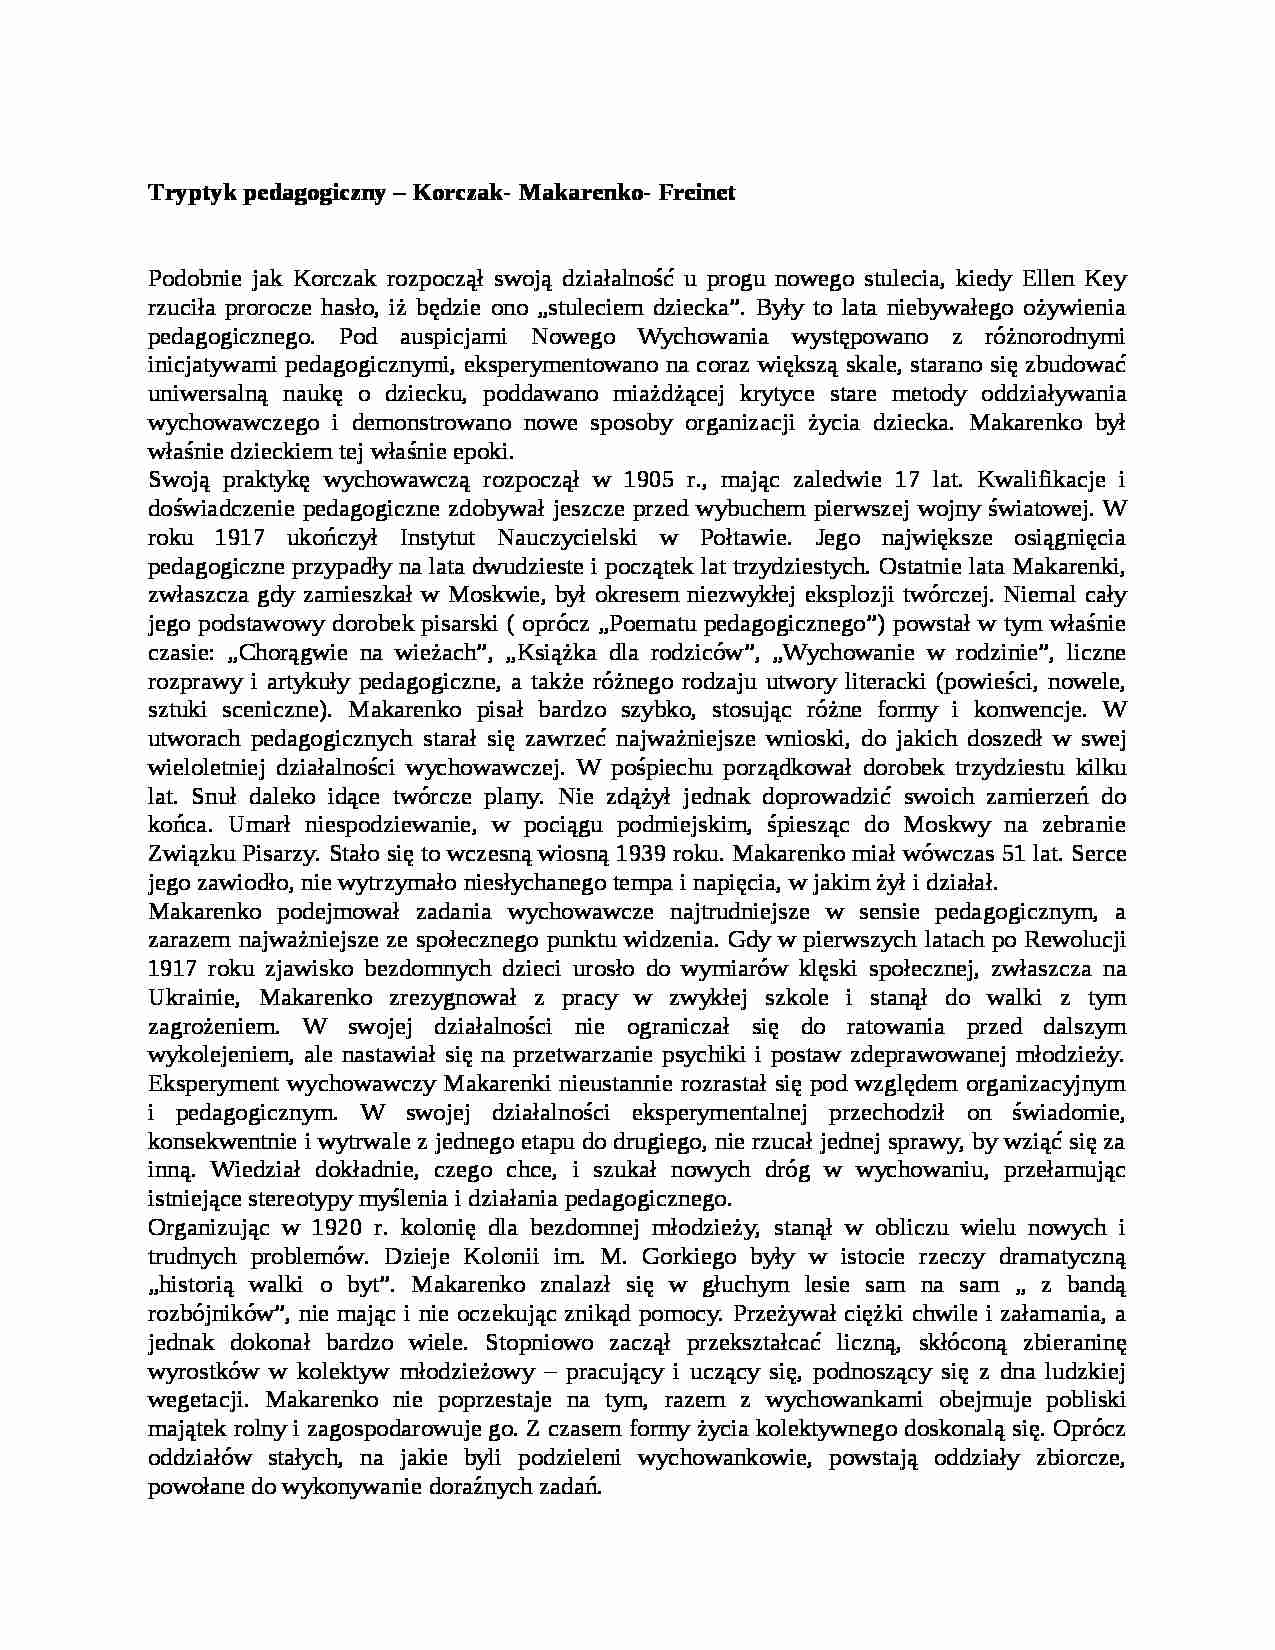 Tryptyk pedagogiczny - Korczak- Makarenko- Freine - strona 1